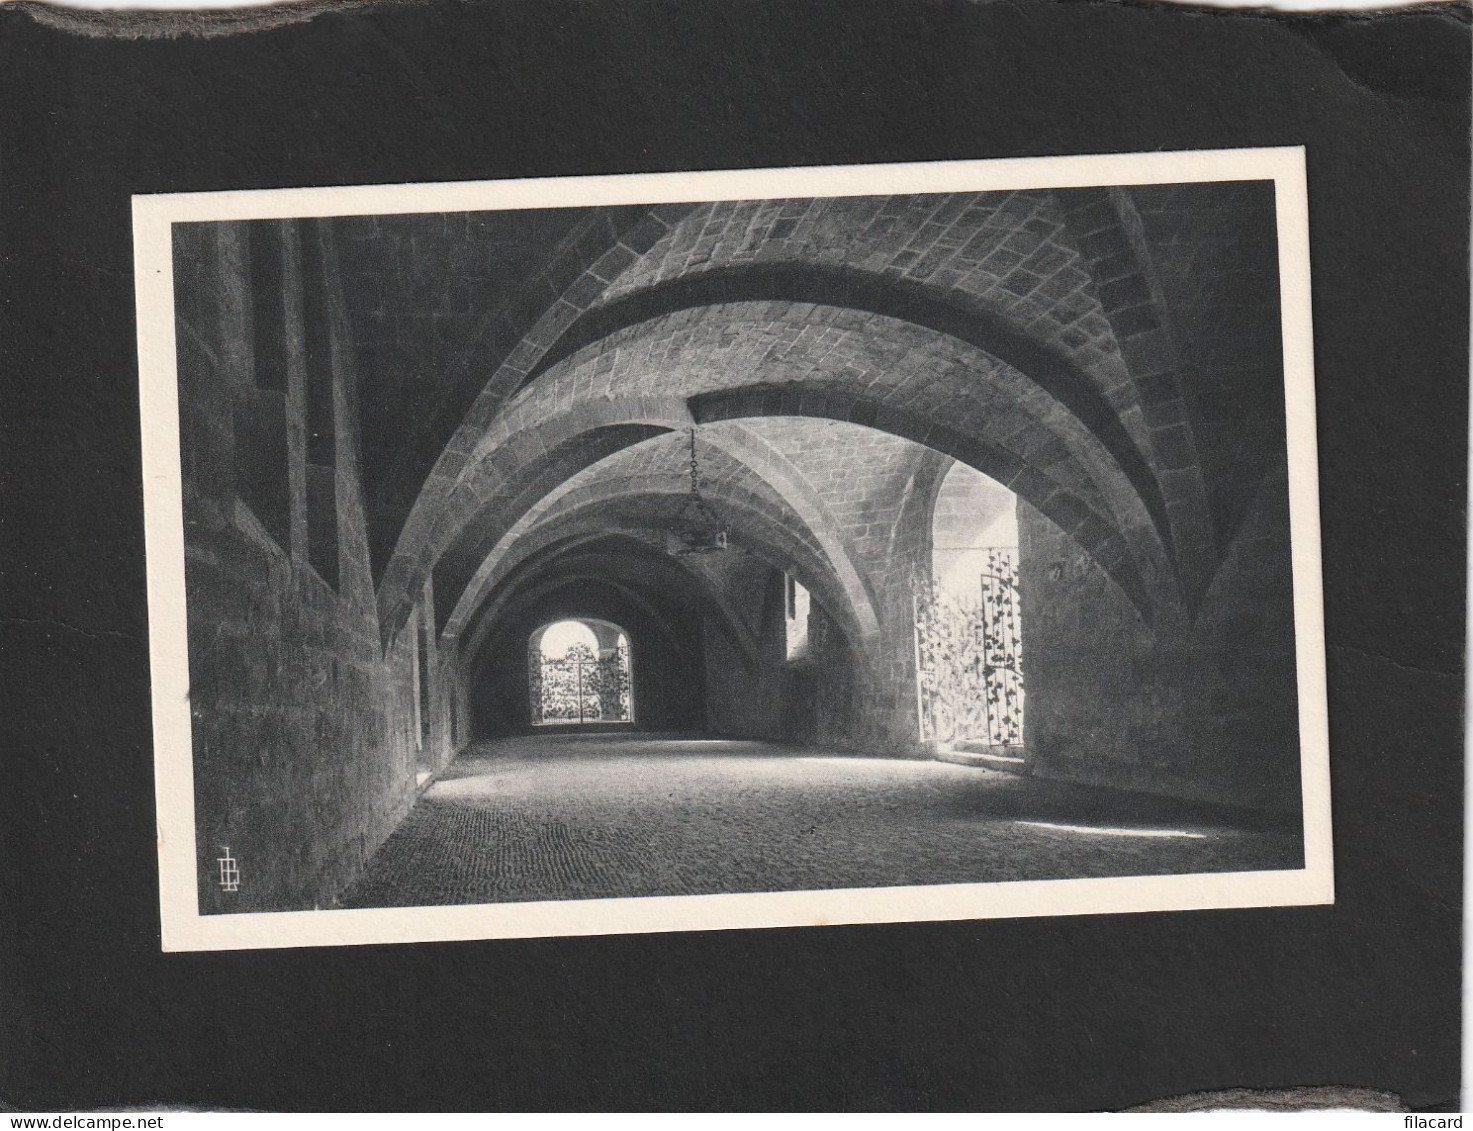 127173      Francia,  Abbaye  De  Fontfroide,  XIIe-XIIIe  S.,  La  Salle  Des  Gardes,   NV - Languedoc-Roussillon